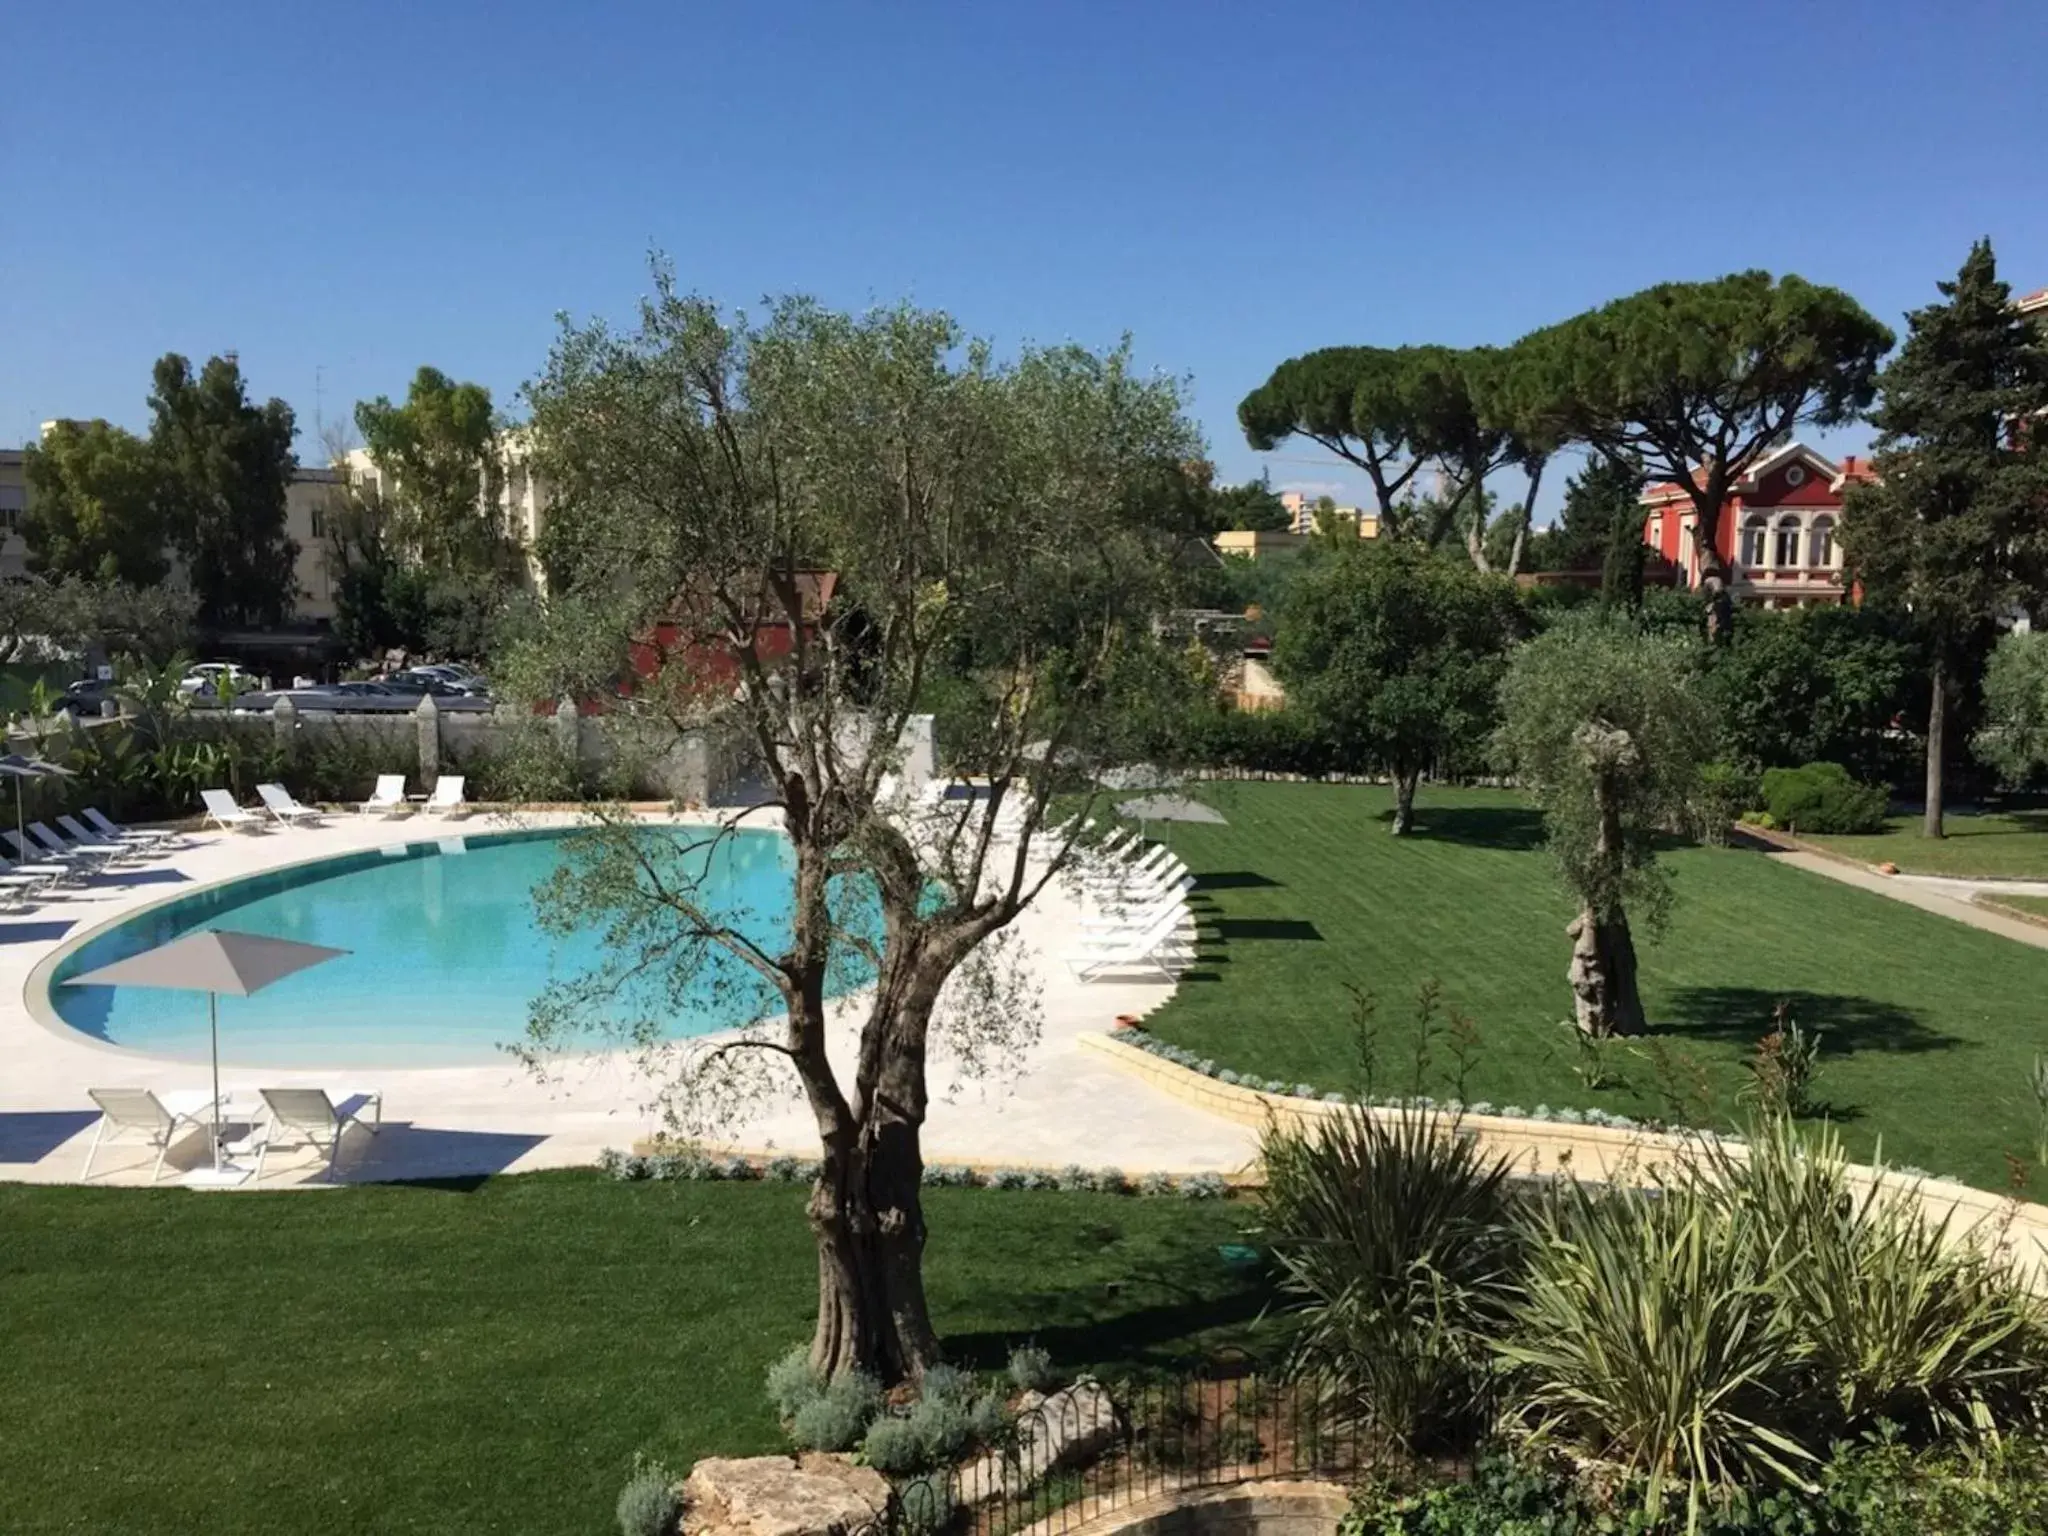 Pool View in Mercure Villa Romanazzi Carducci Bari